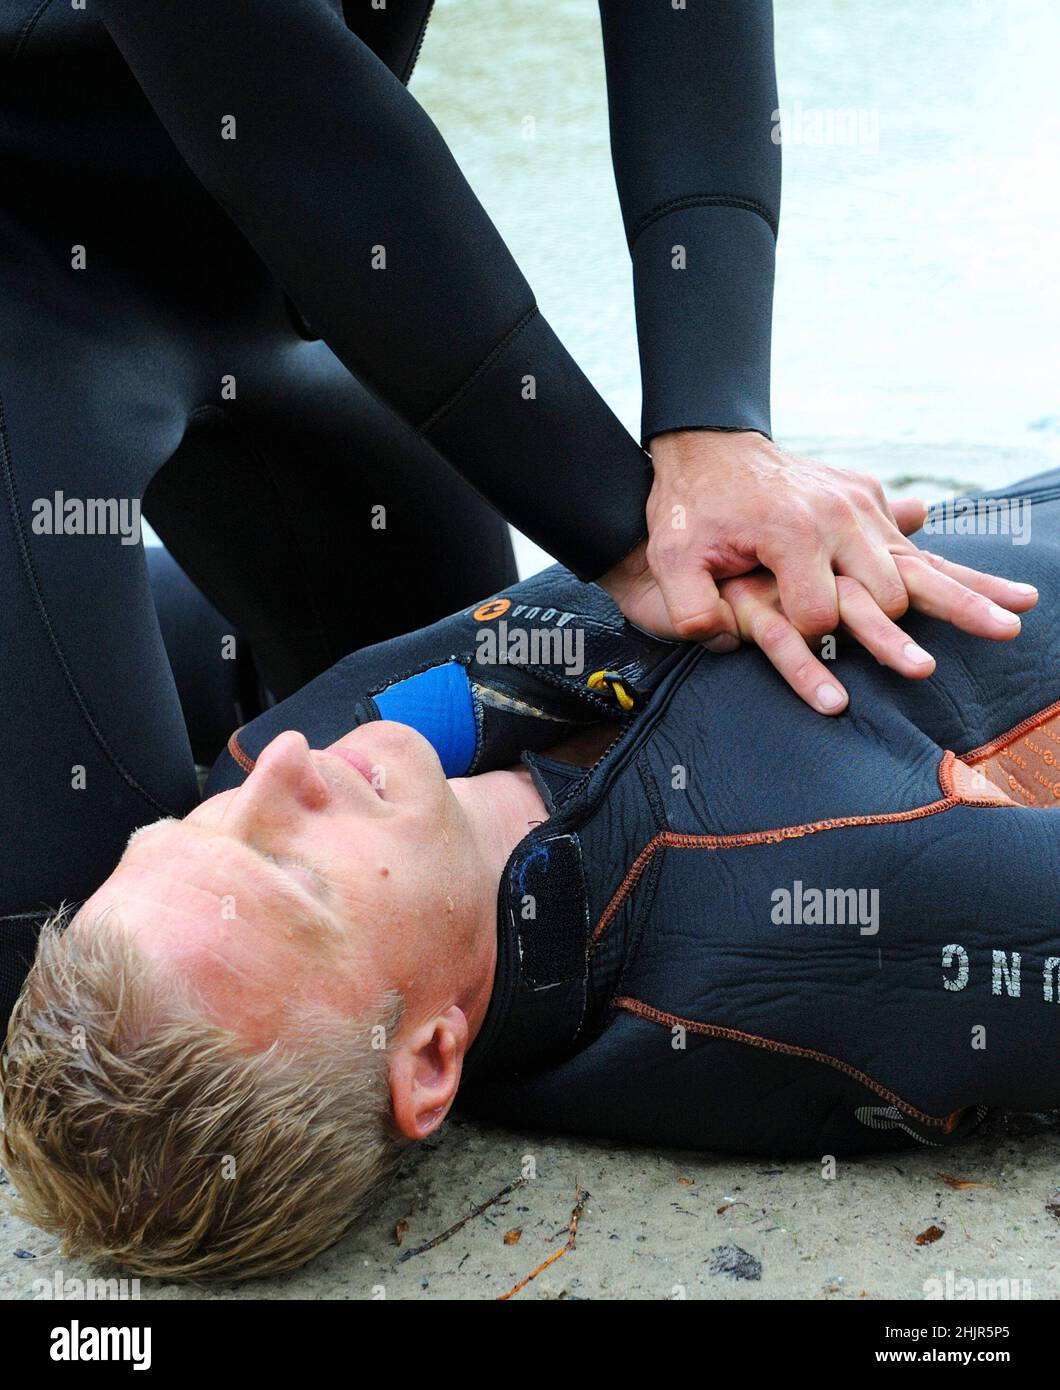 Respiration artificielle. Un sauveteur appuie sur la poitrine de la noyade par les mains. Kiev, Ukraine Banque D'Images